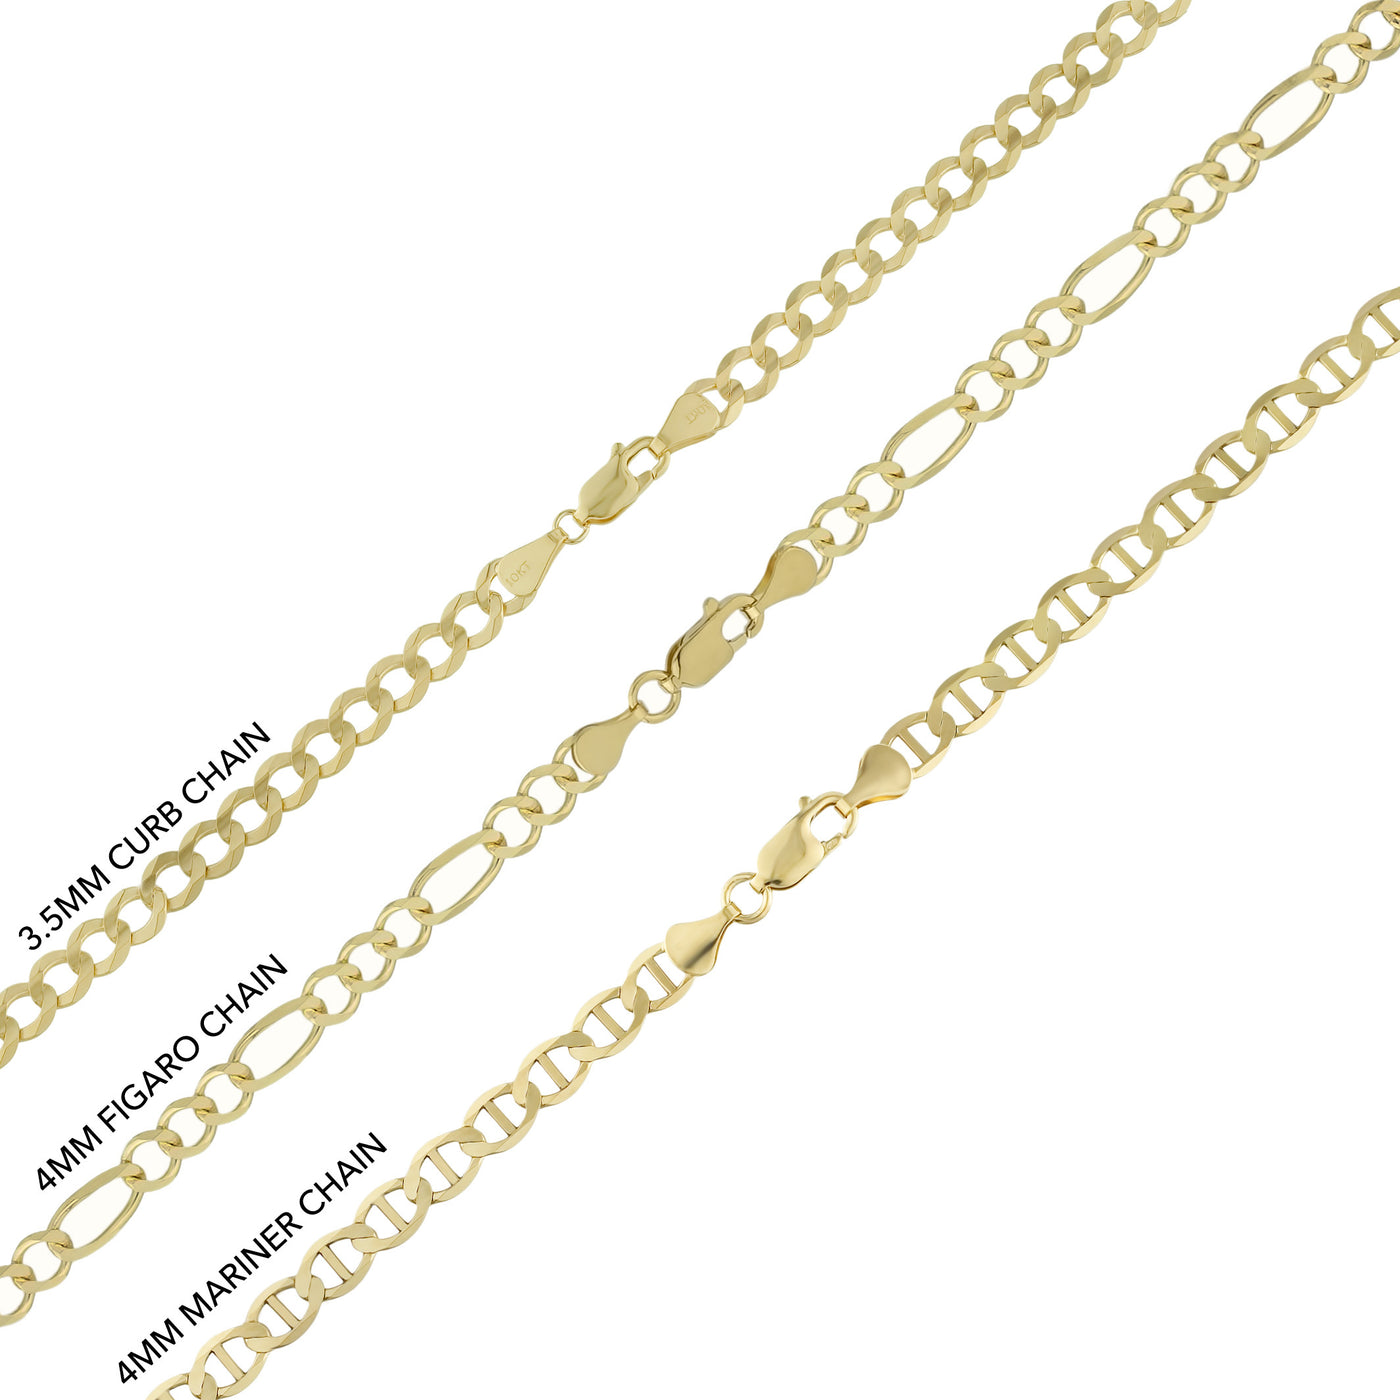 1 3/8" CZ Dallas Cowboys Helmet Medallion Pendant & Chain Necklace Set 10K Yellow Gold